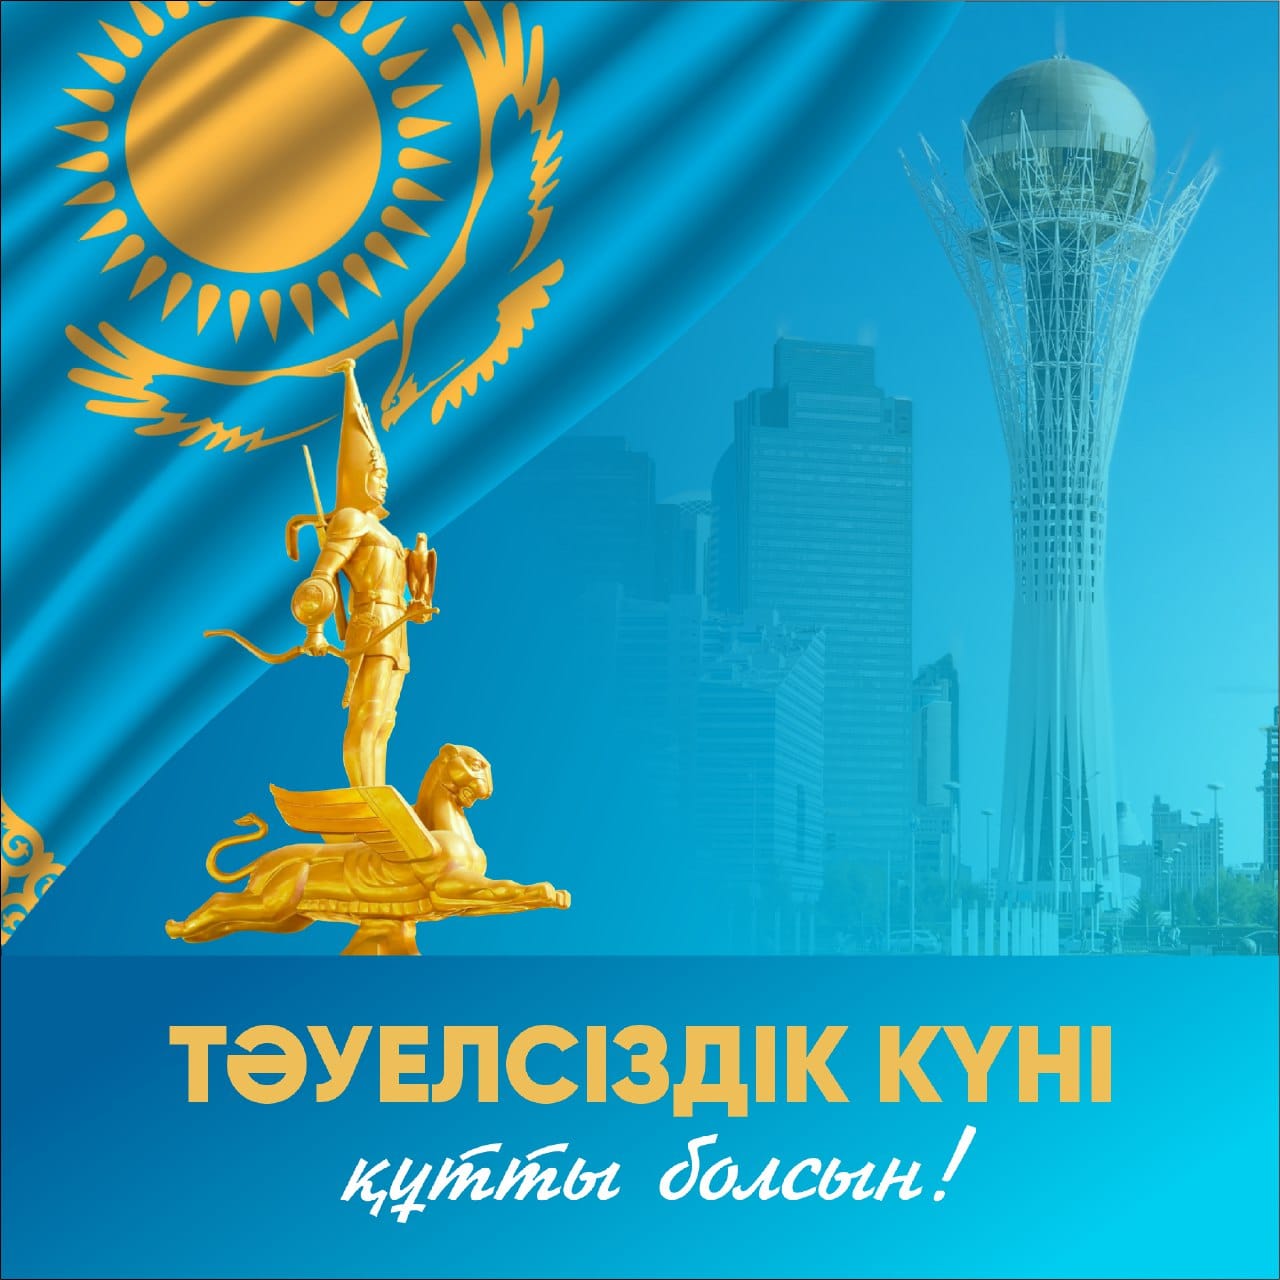 16 желтоқсан-Қазақстан Республикасының Тәуелсіздік күні/16 декабря - День Независимости Республики Казахстан